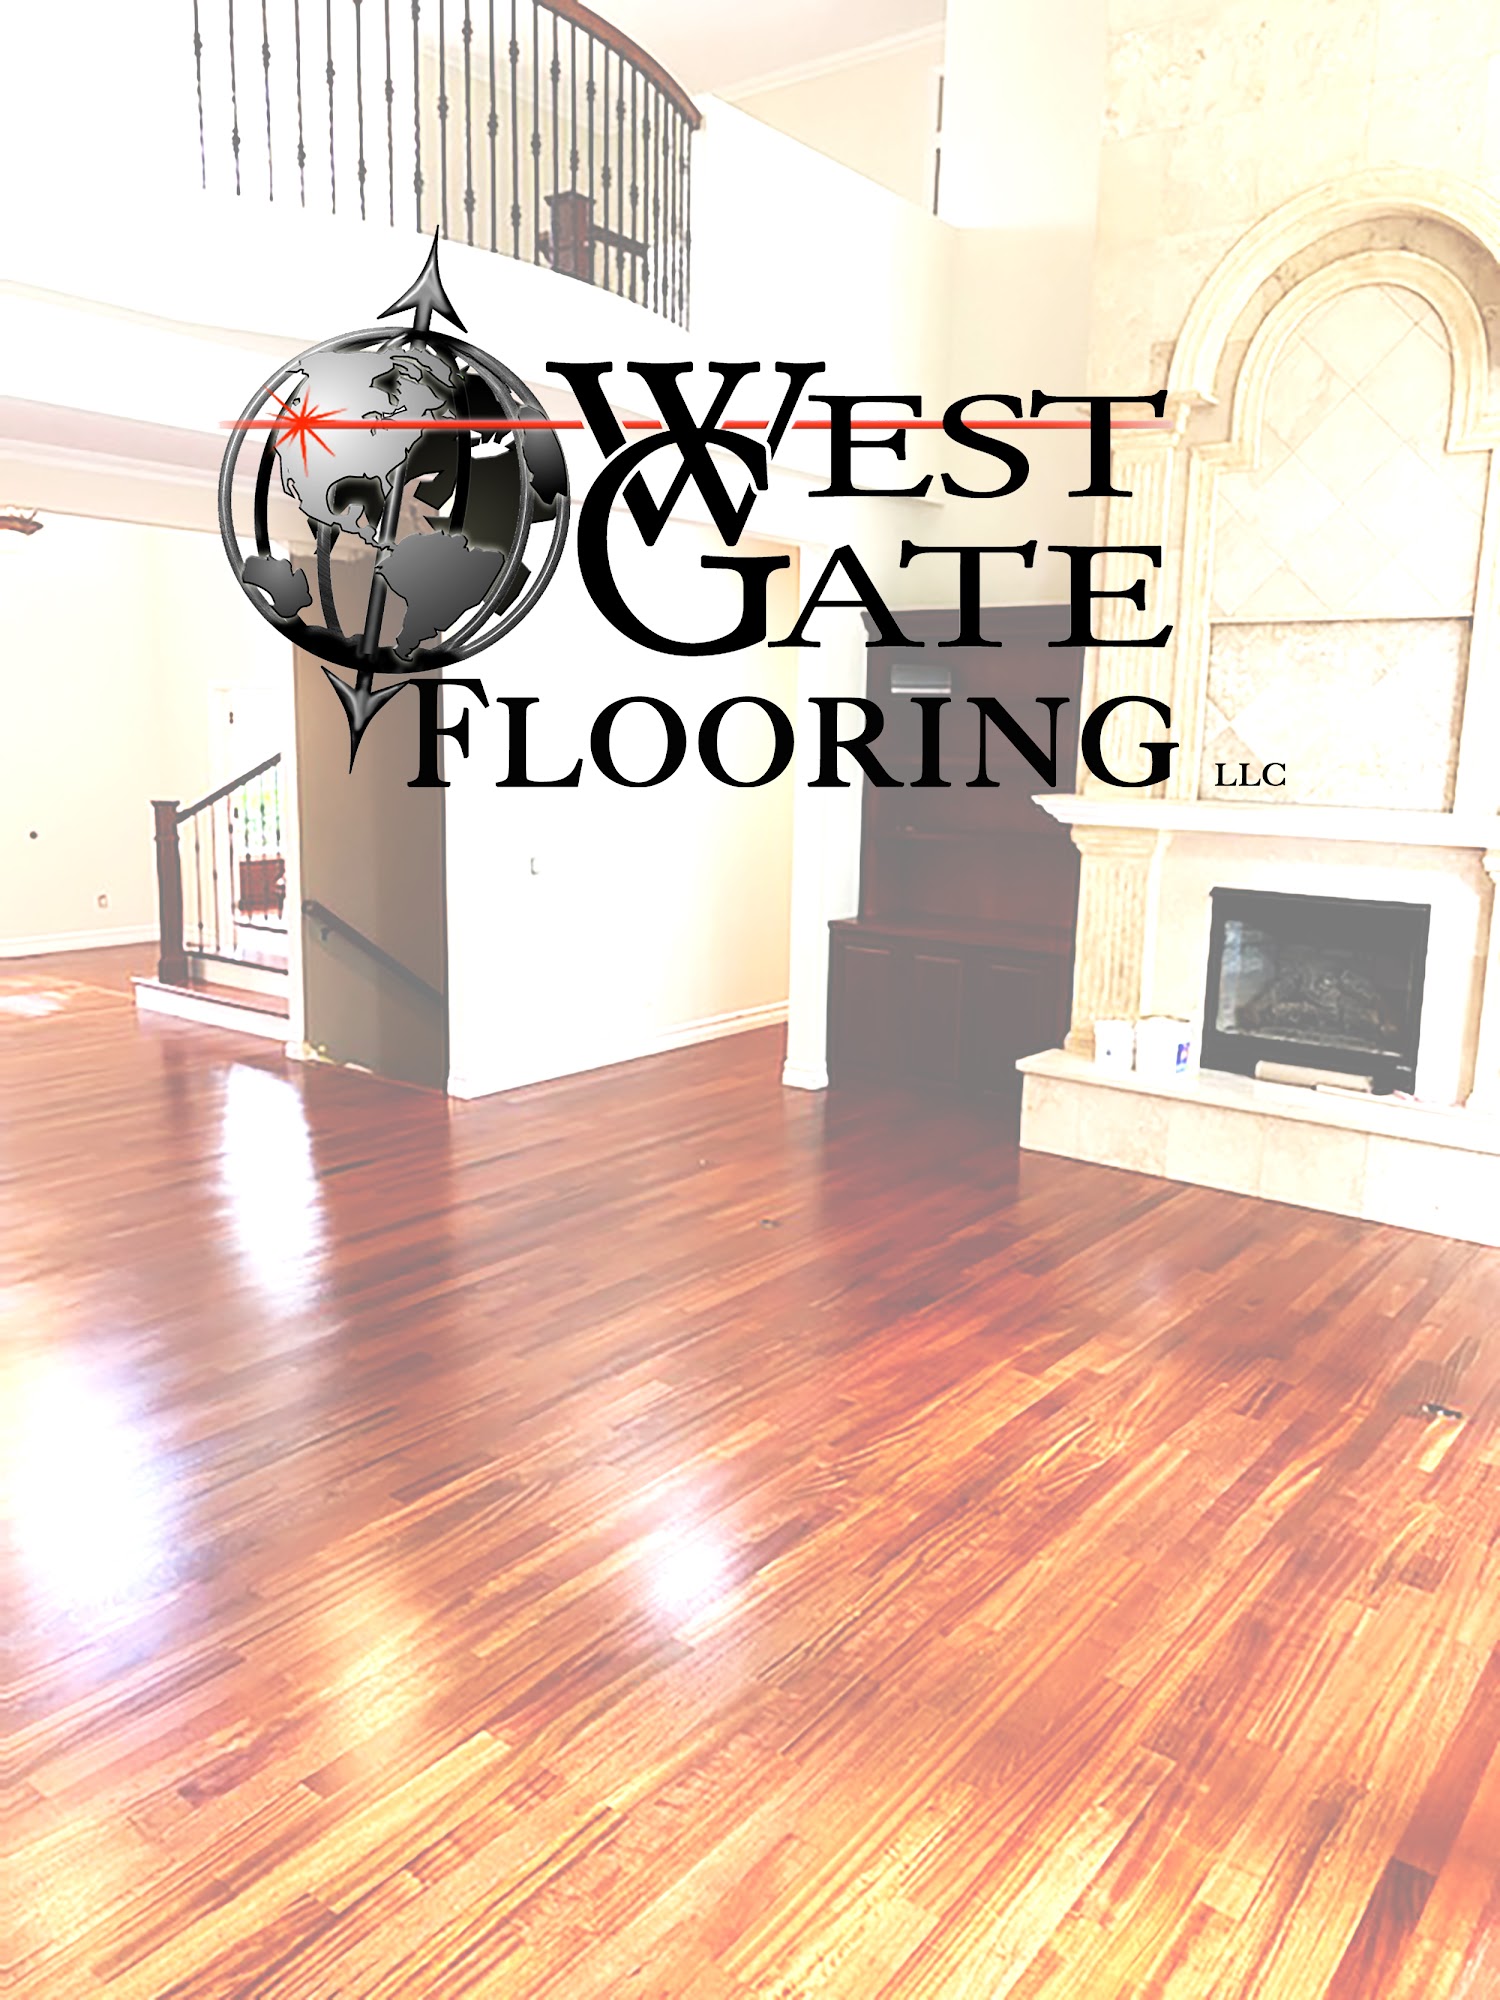 West Gate Flooring LLC